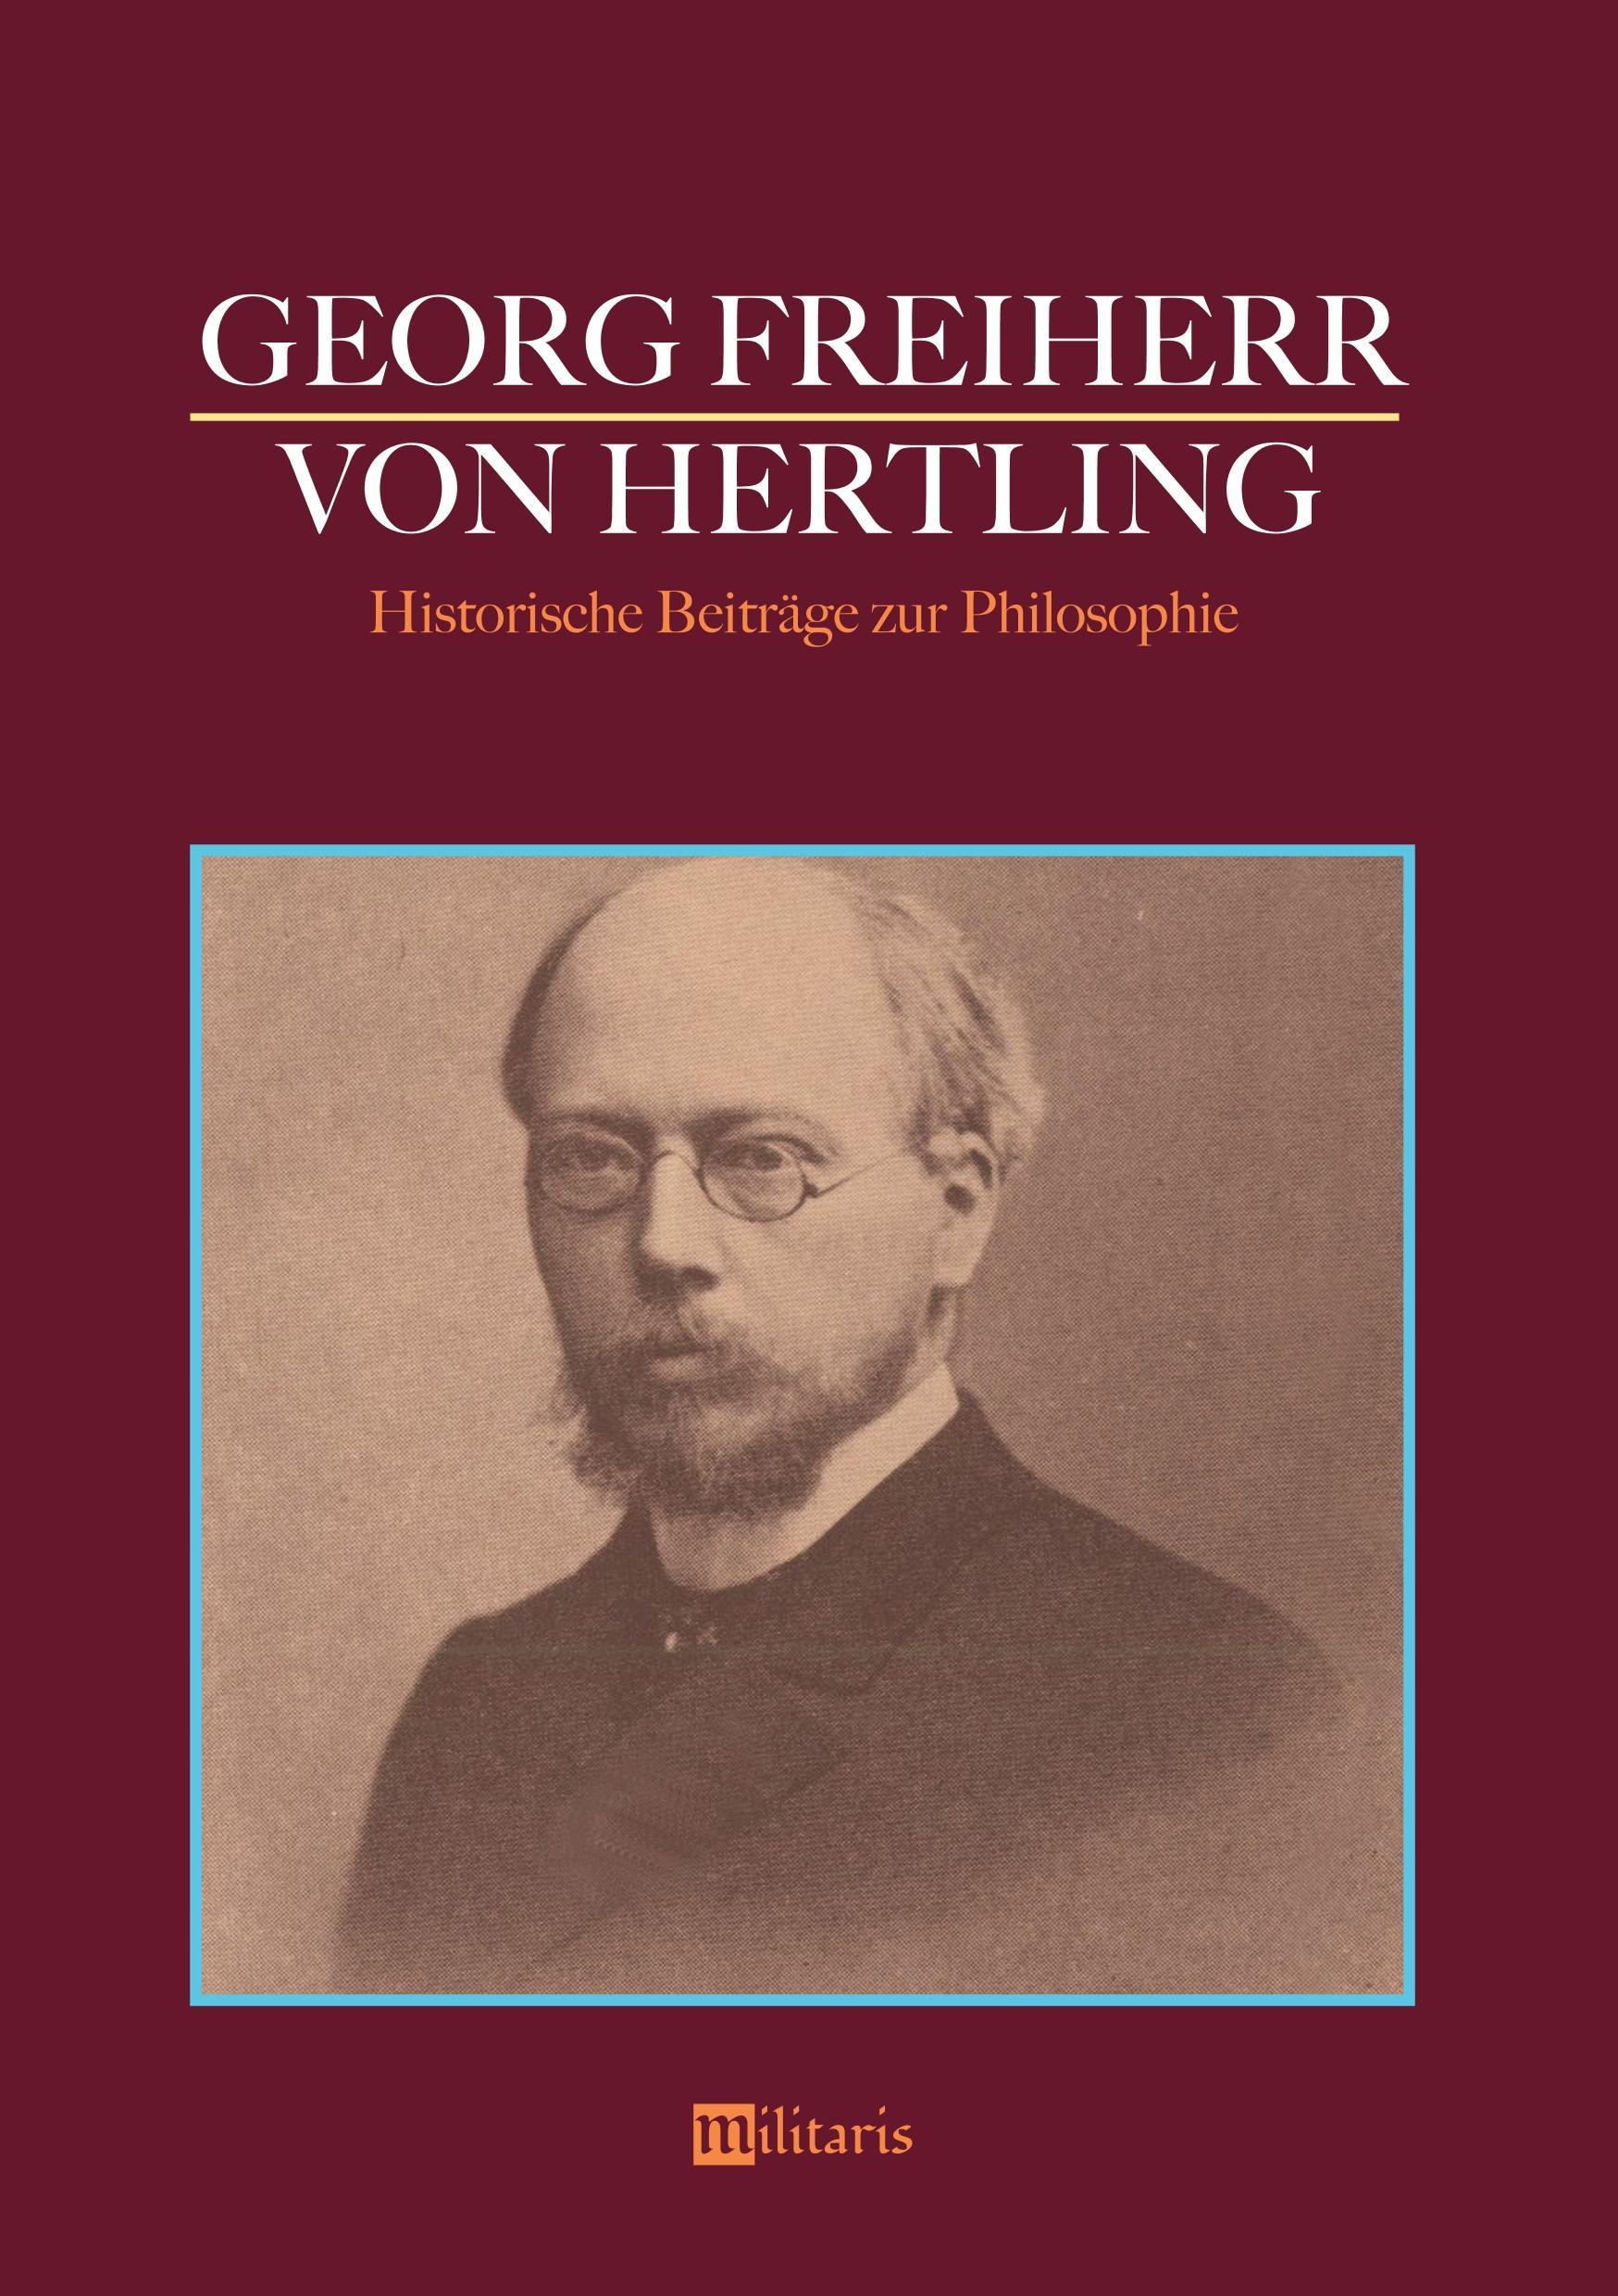 Georg Freiherr von Hertling: Historische Beitraege zur Philosophie - Hertling, Georg von